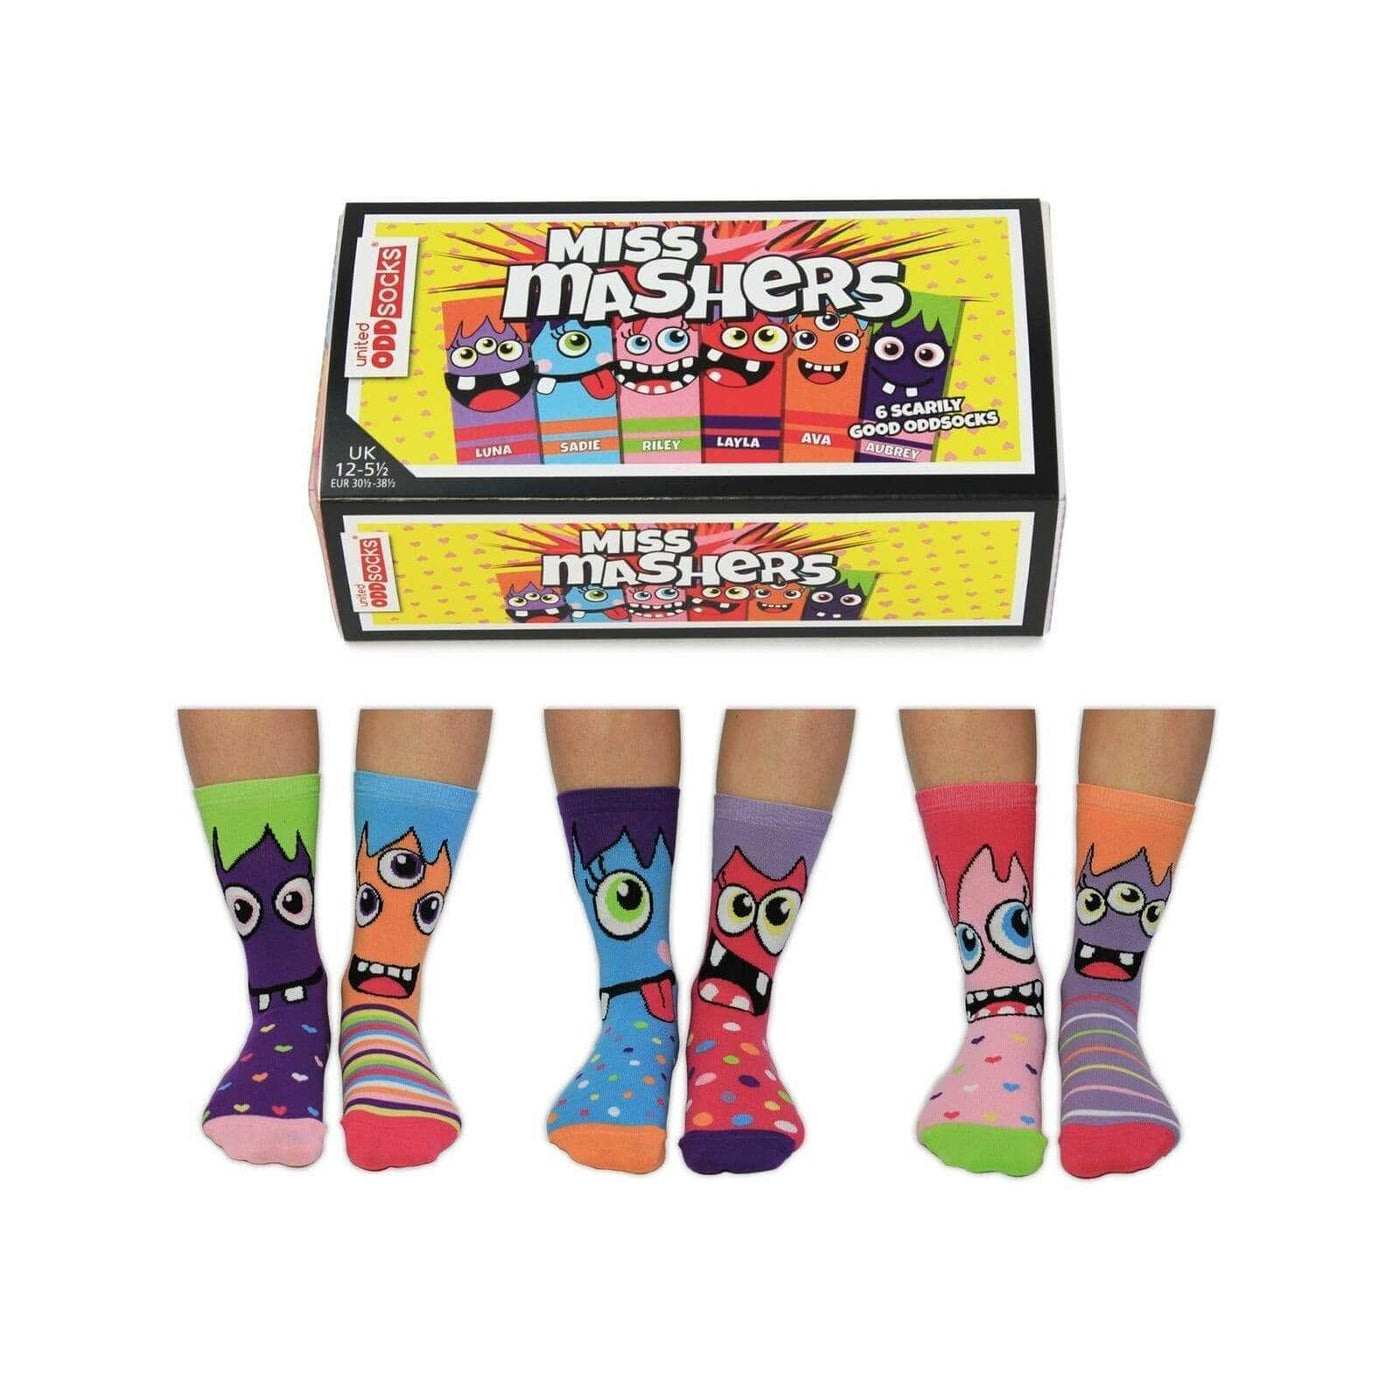 United Odd Socks Socks Novelty Socks for Girls - Miss Mashers